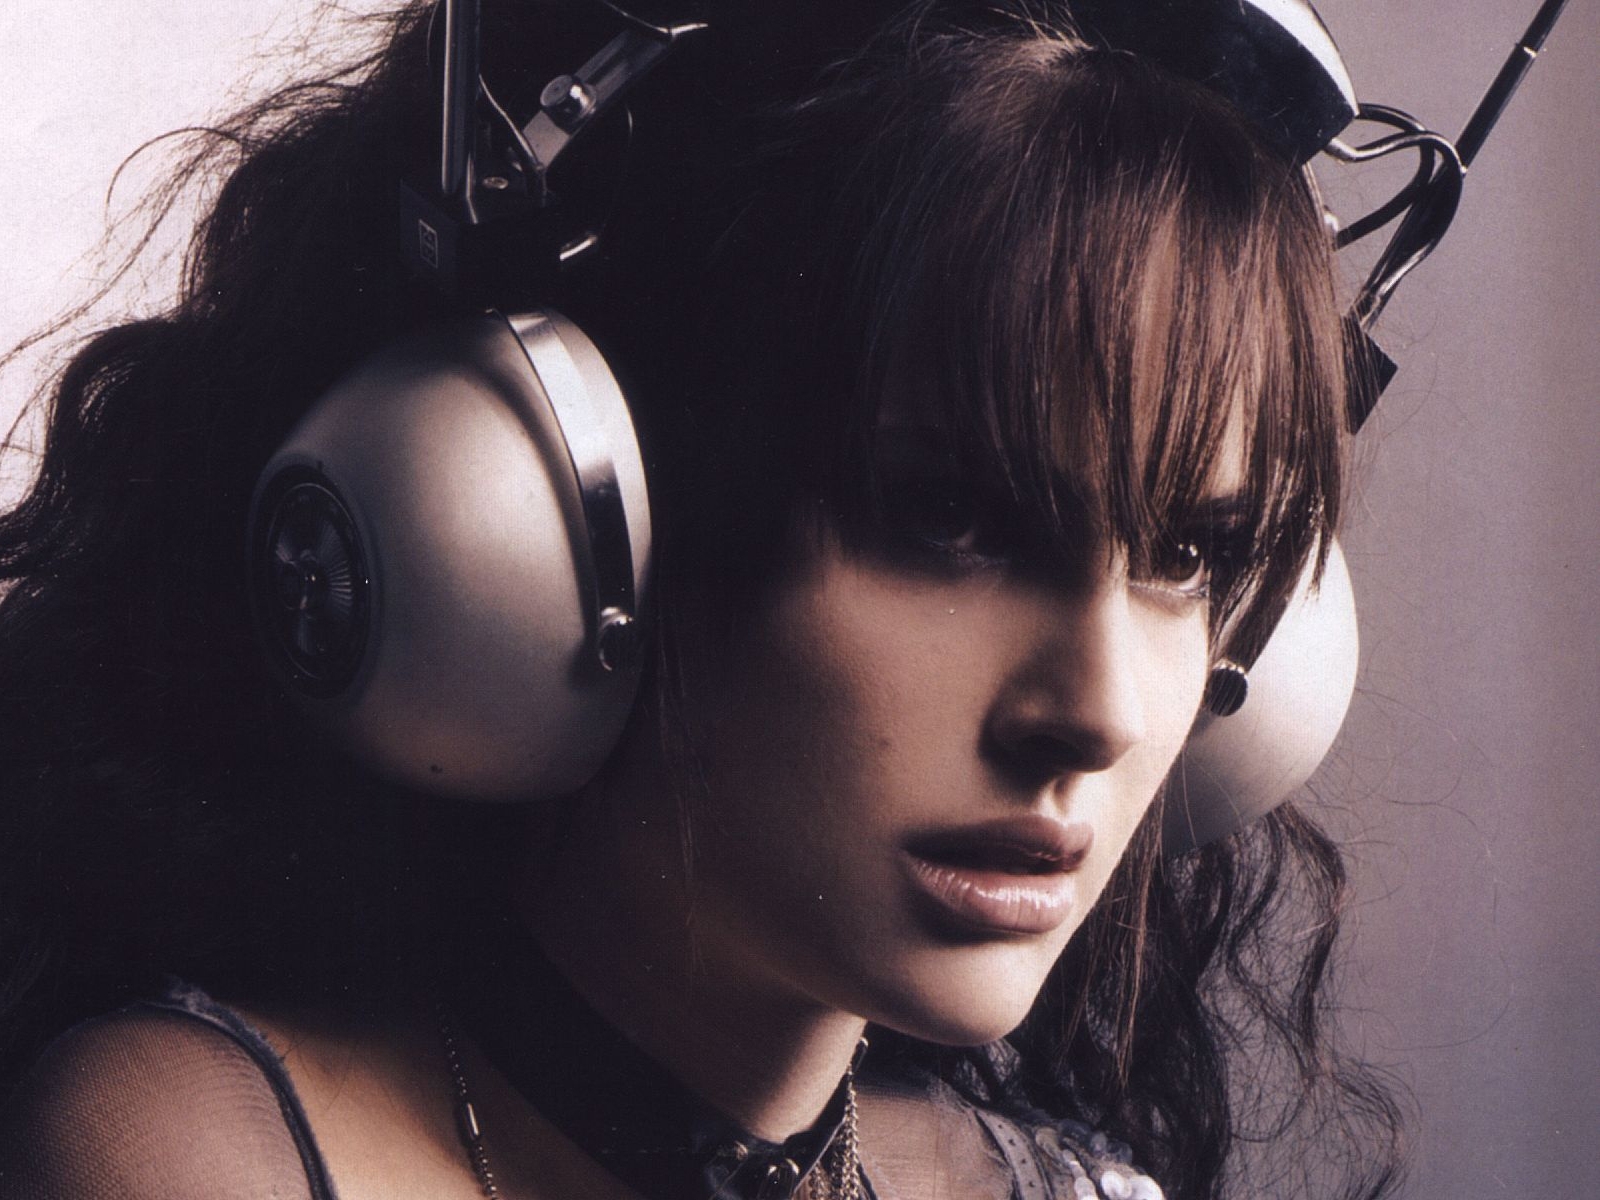 Headphones Brunettes Women Actress Natalie Portman - Natalie Portman Headphones - HD Wallpaper 